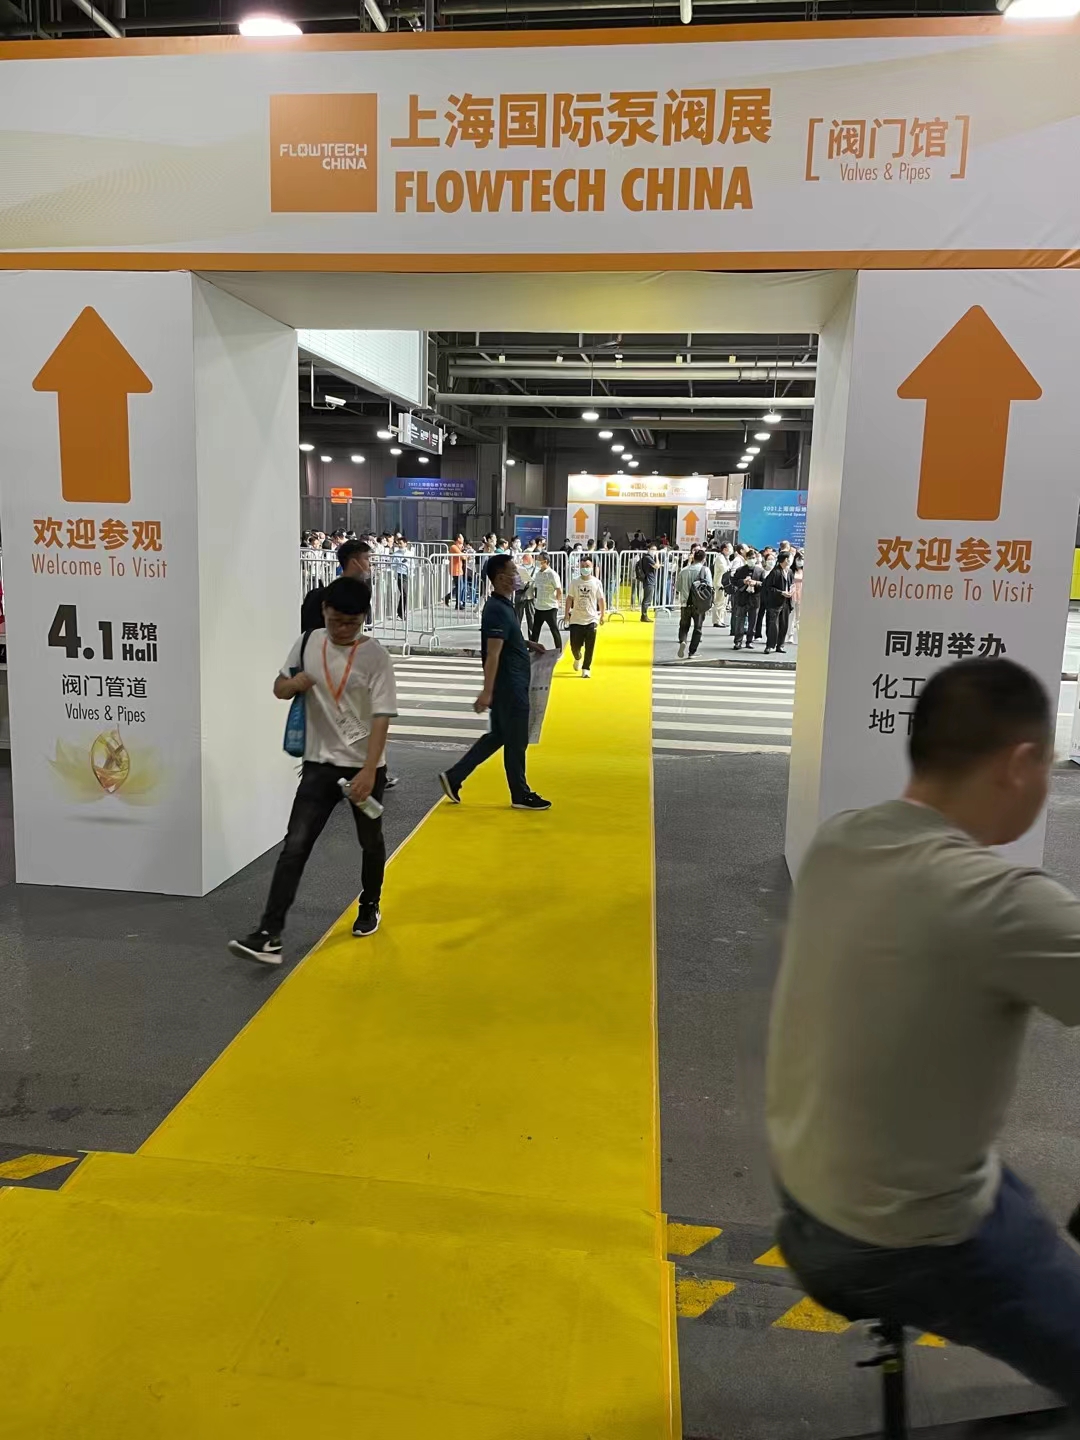 flowtech china